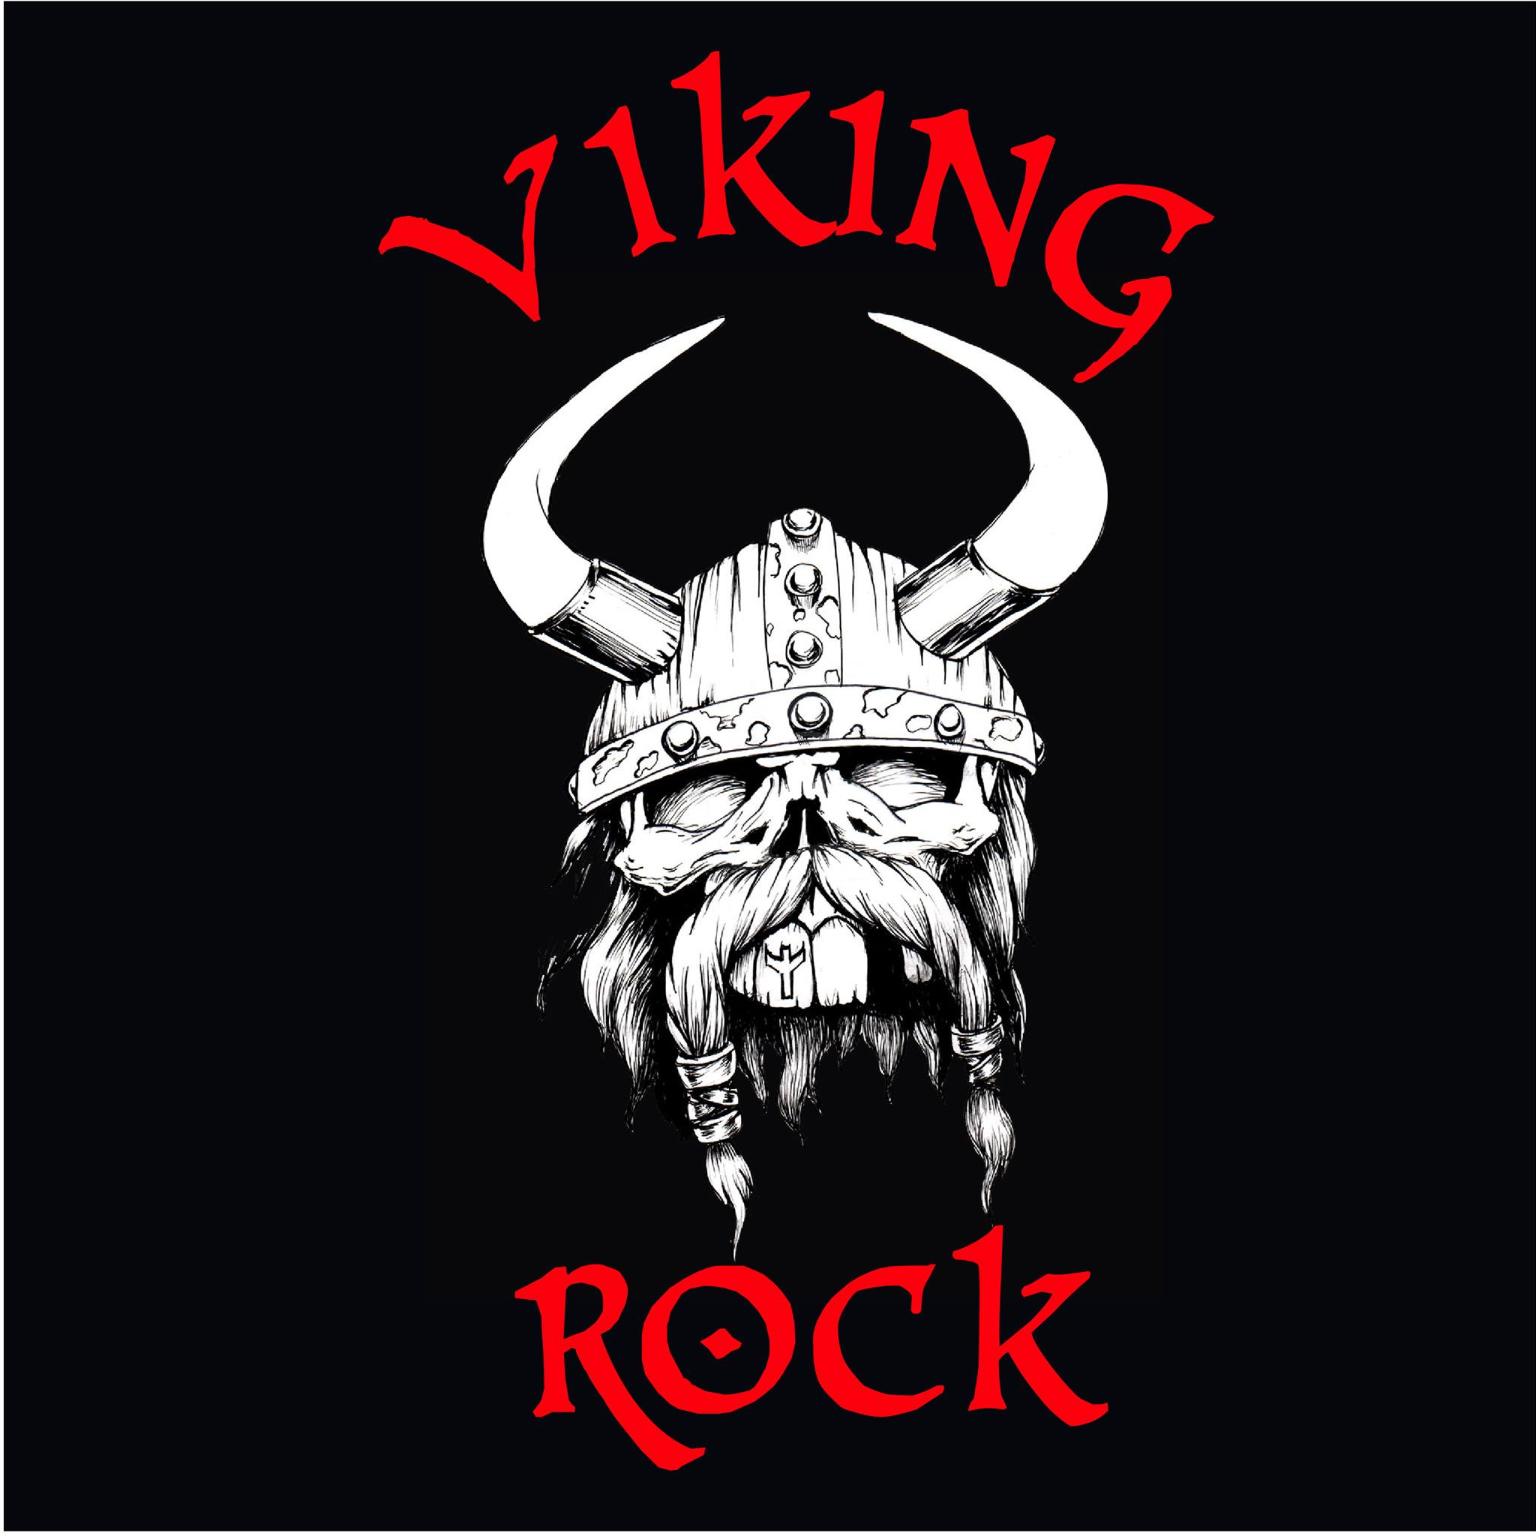 Viking Rock